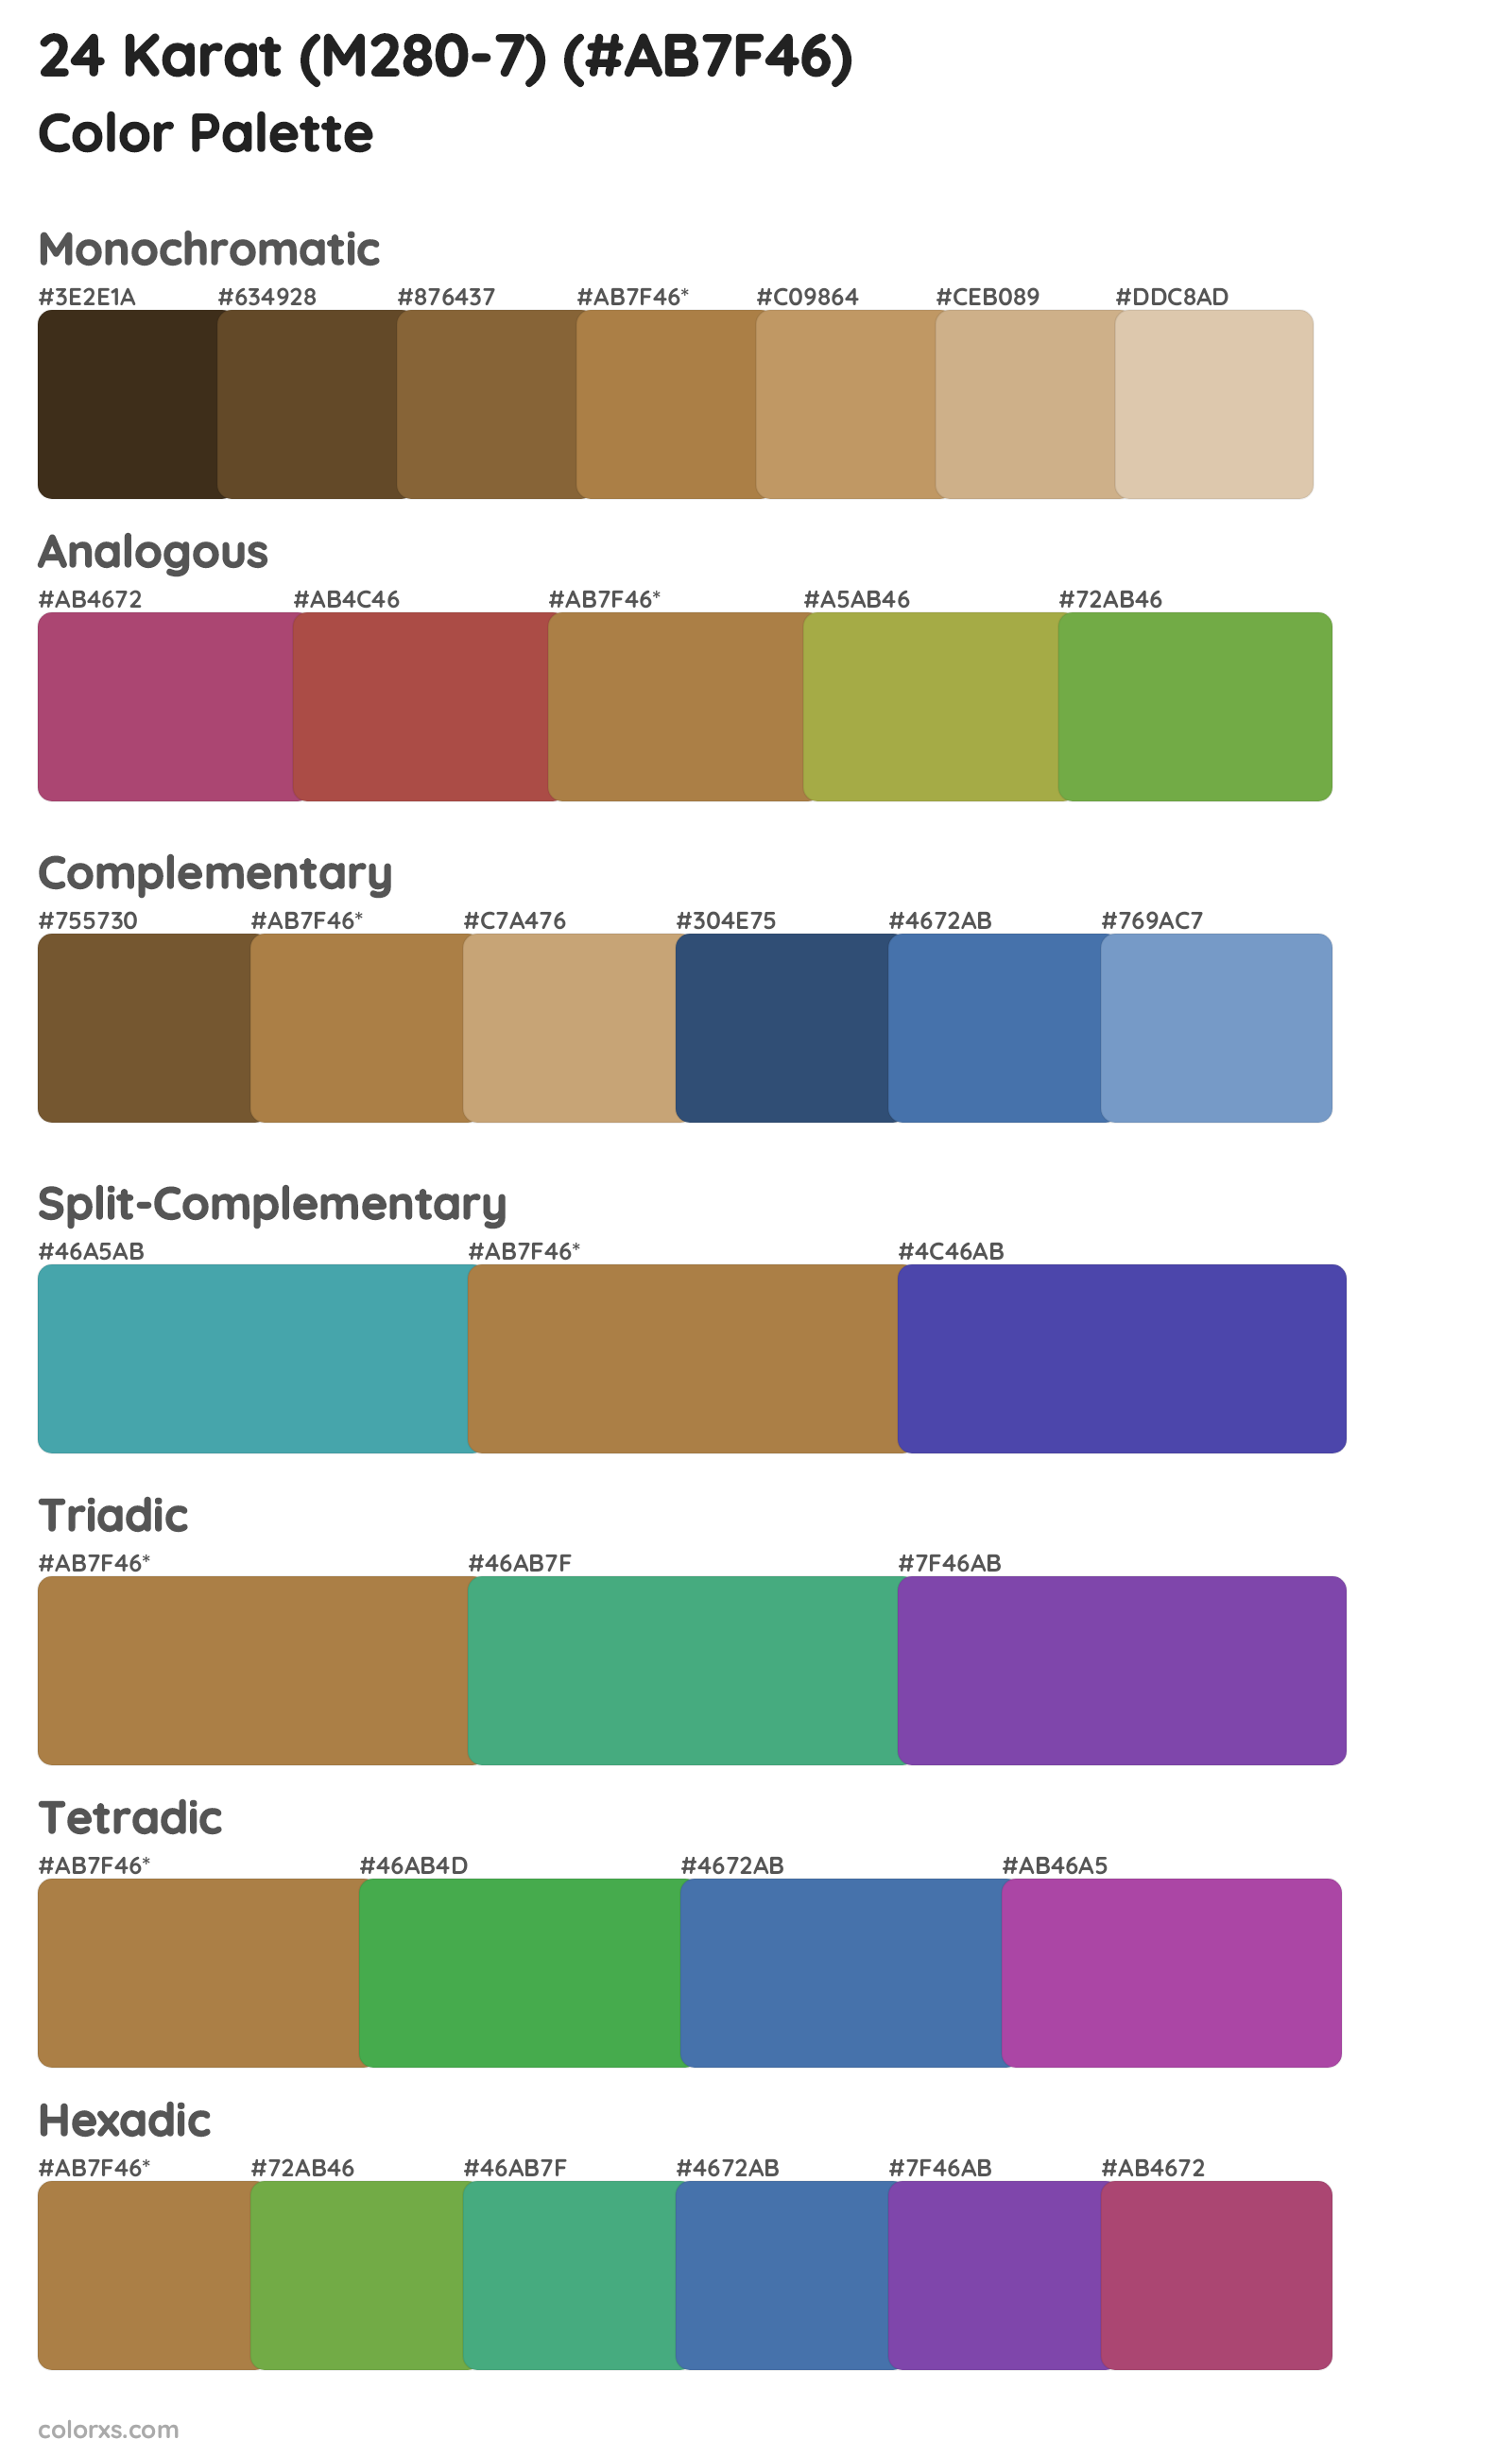 24 Karat (M280-7) Color Scheme Palettes